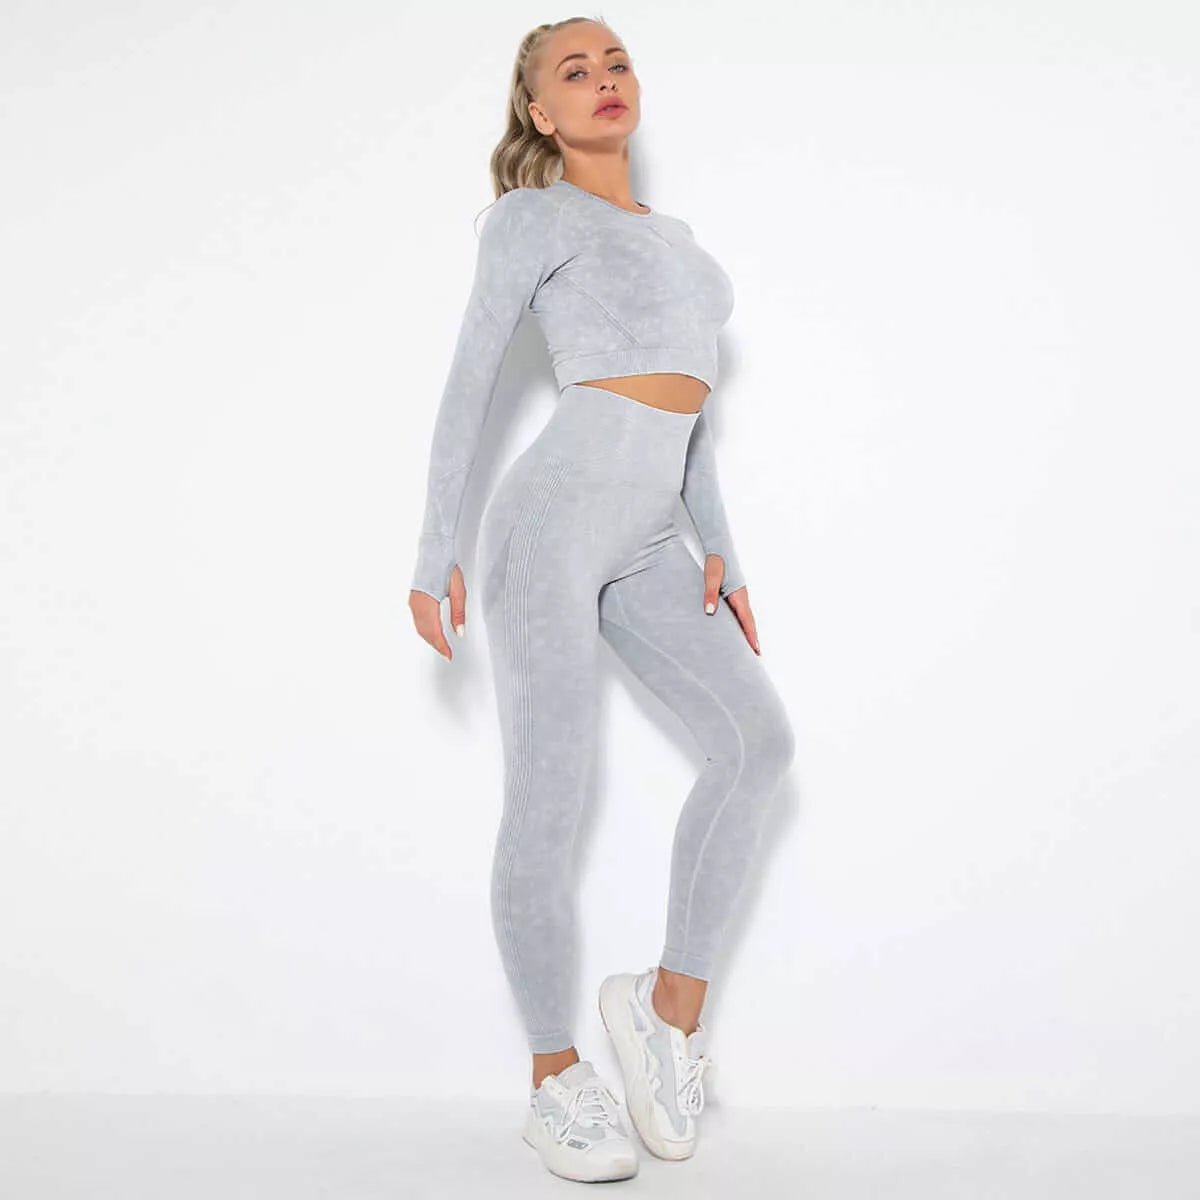 Peach Hip Raise Yoga Workout Outfit - London's Closet Boutique